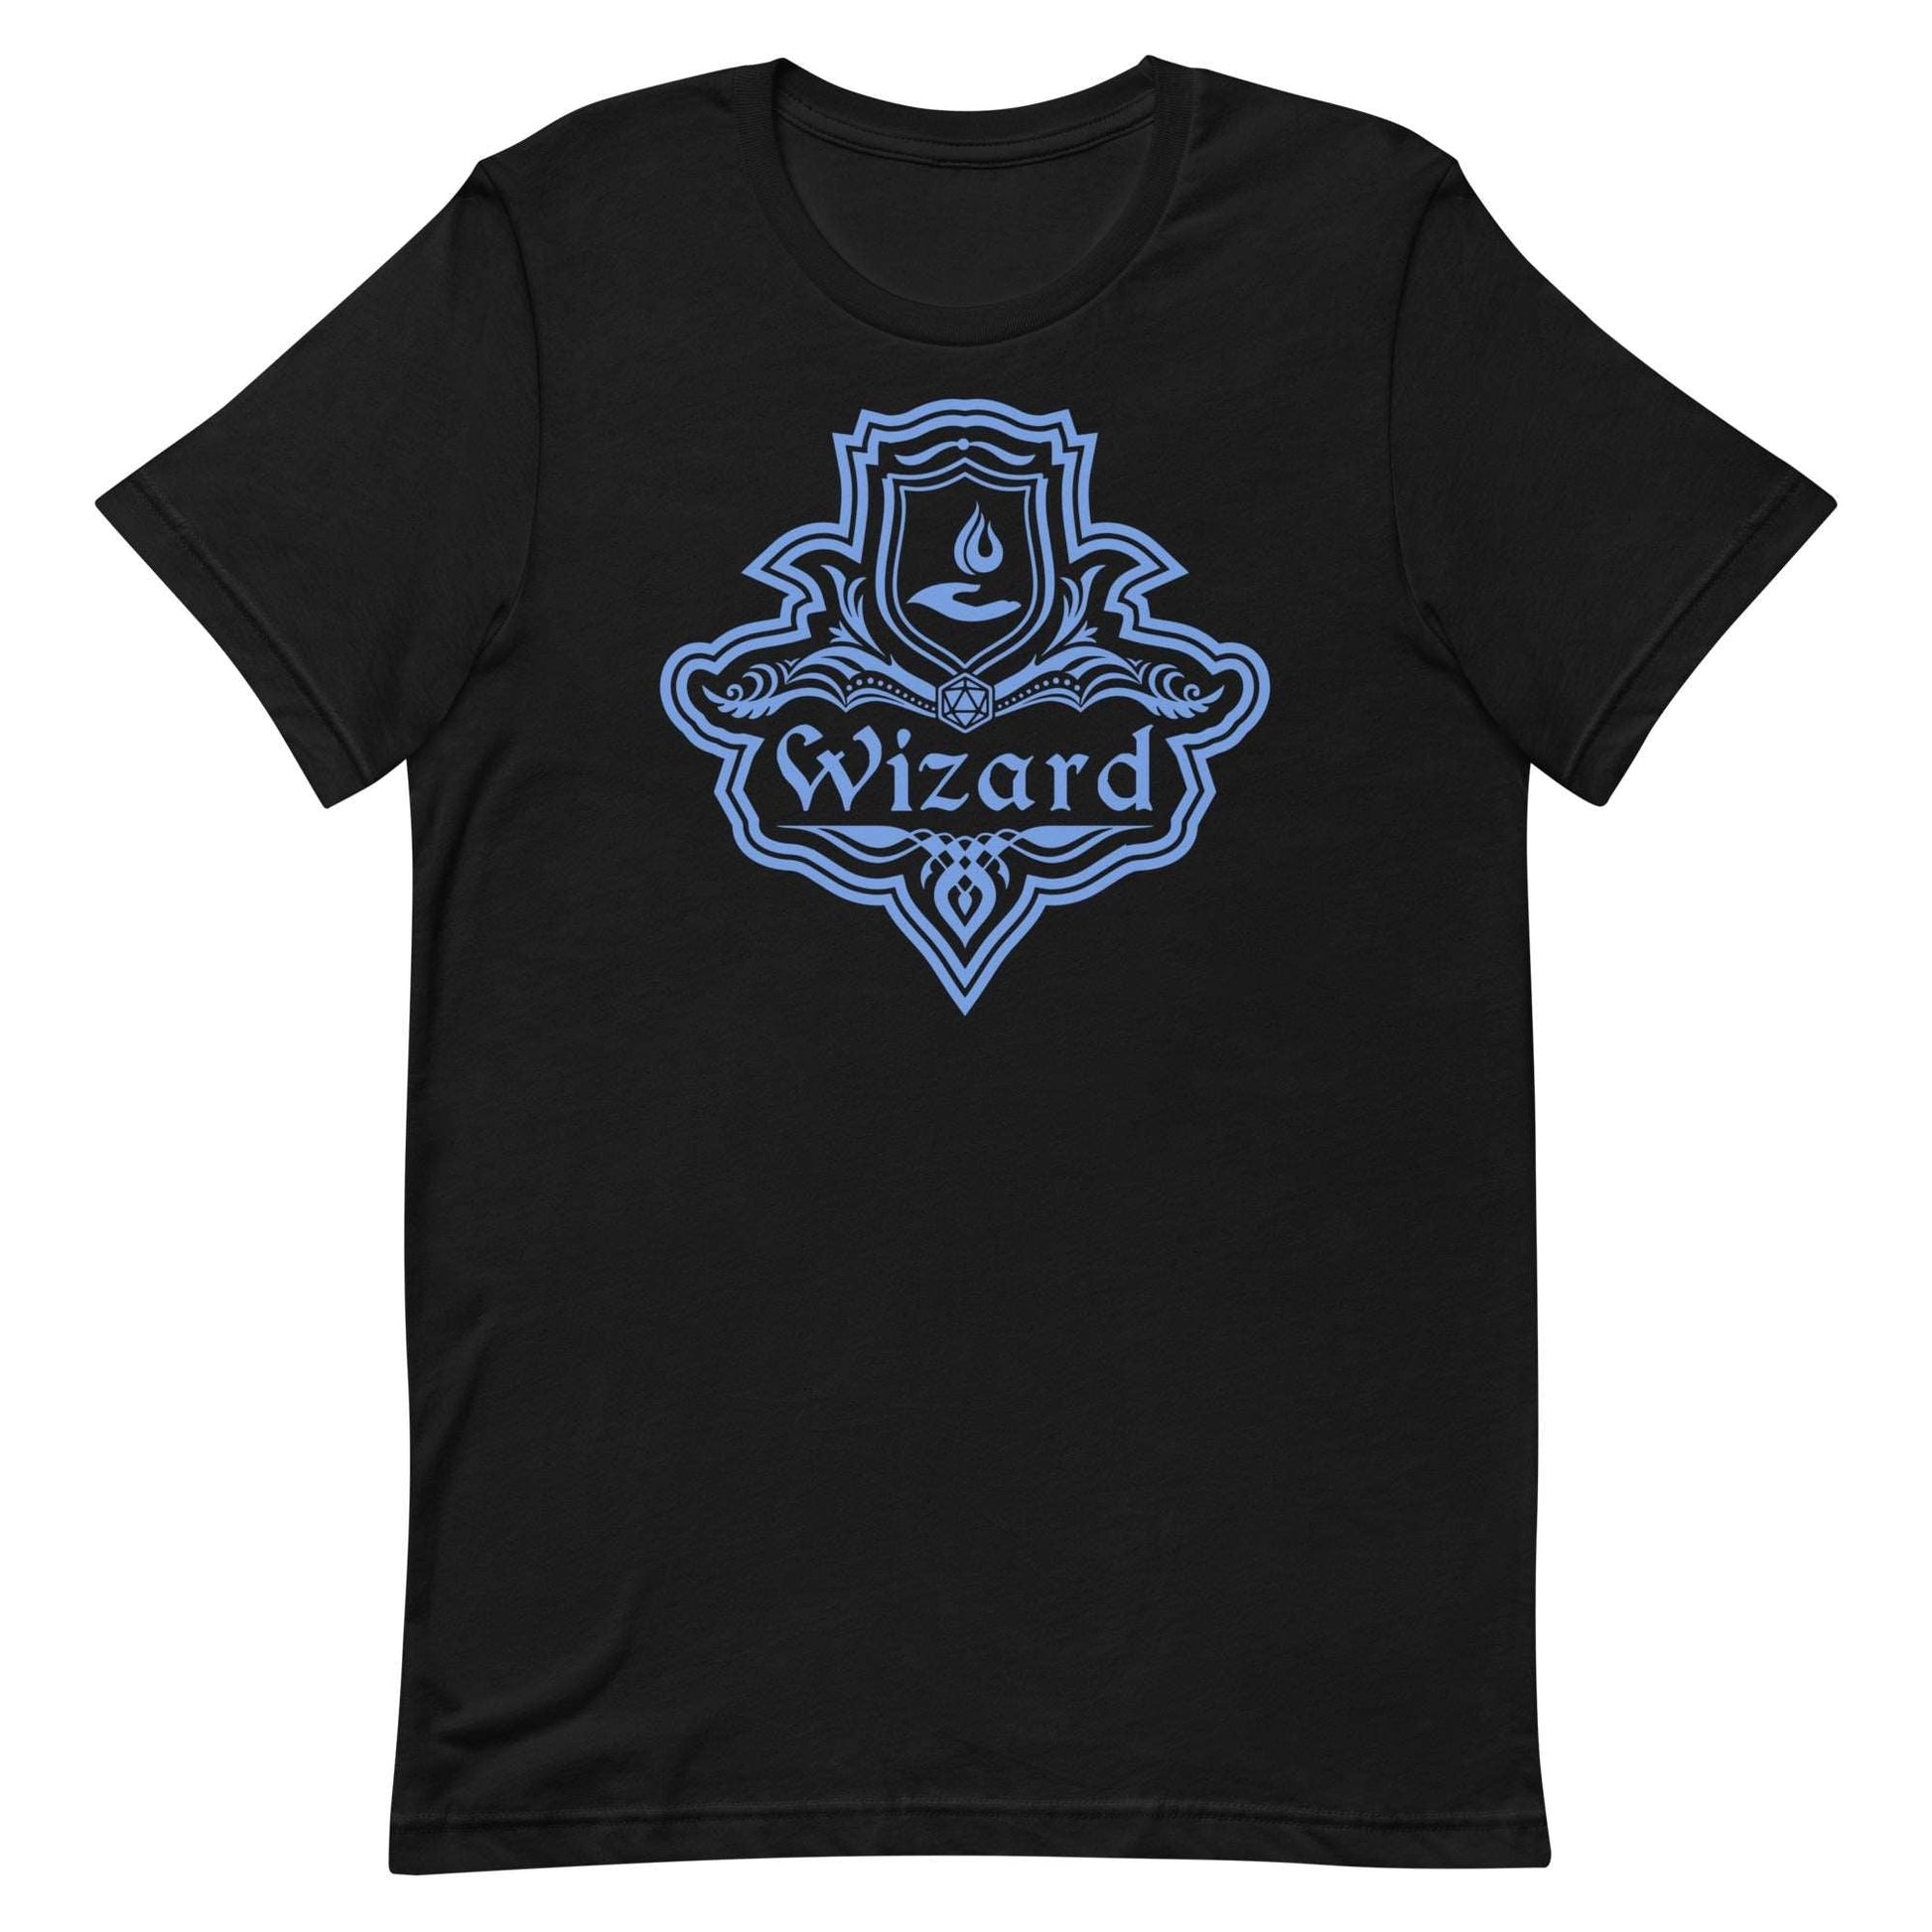 DnD Wizard Class Emblem T-Shirt - Dungeons & Dragons Wizard Tee T-Shirt Black / S